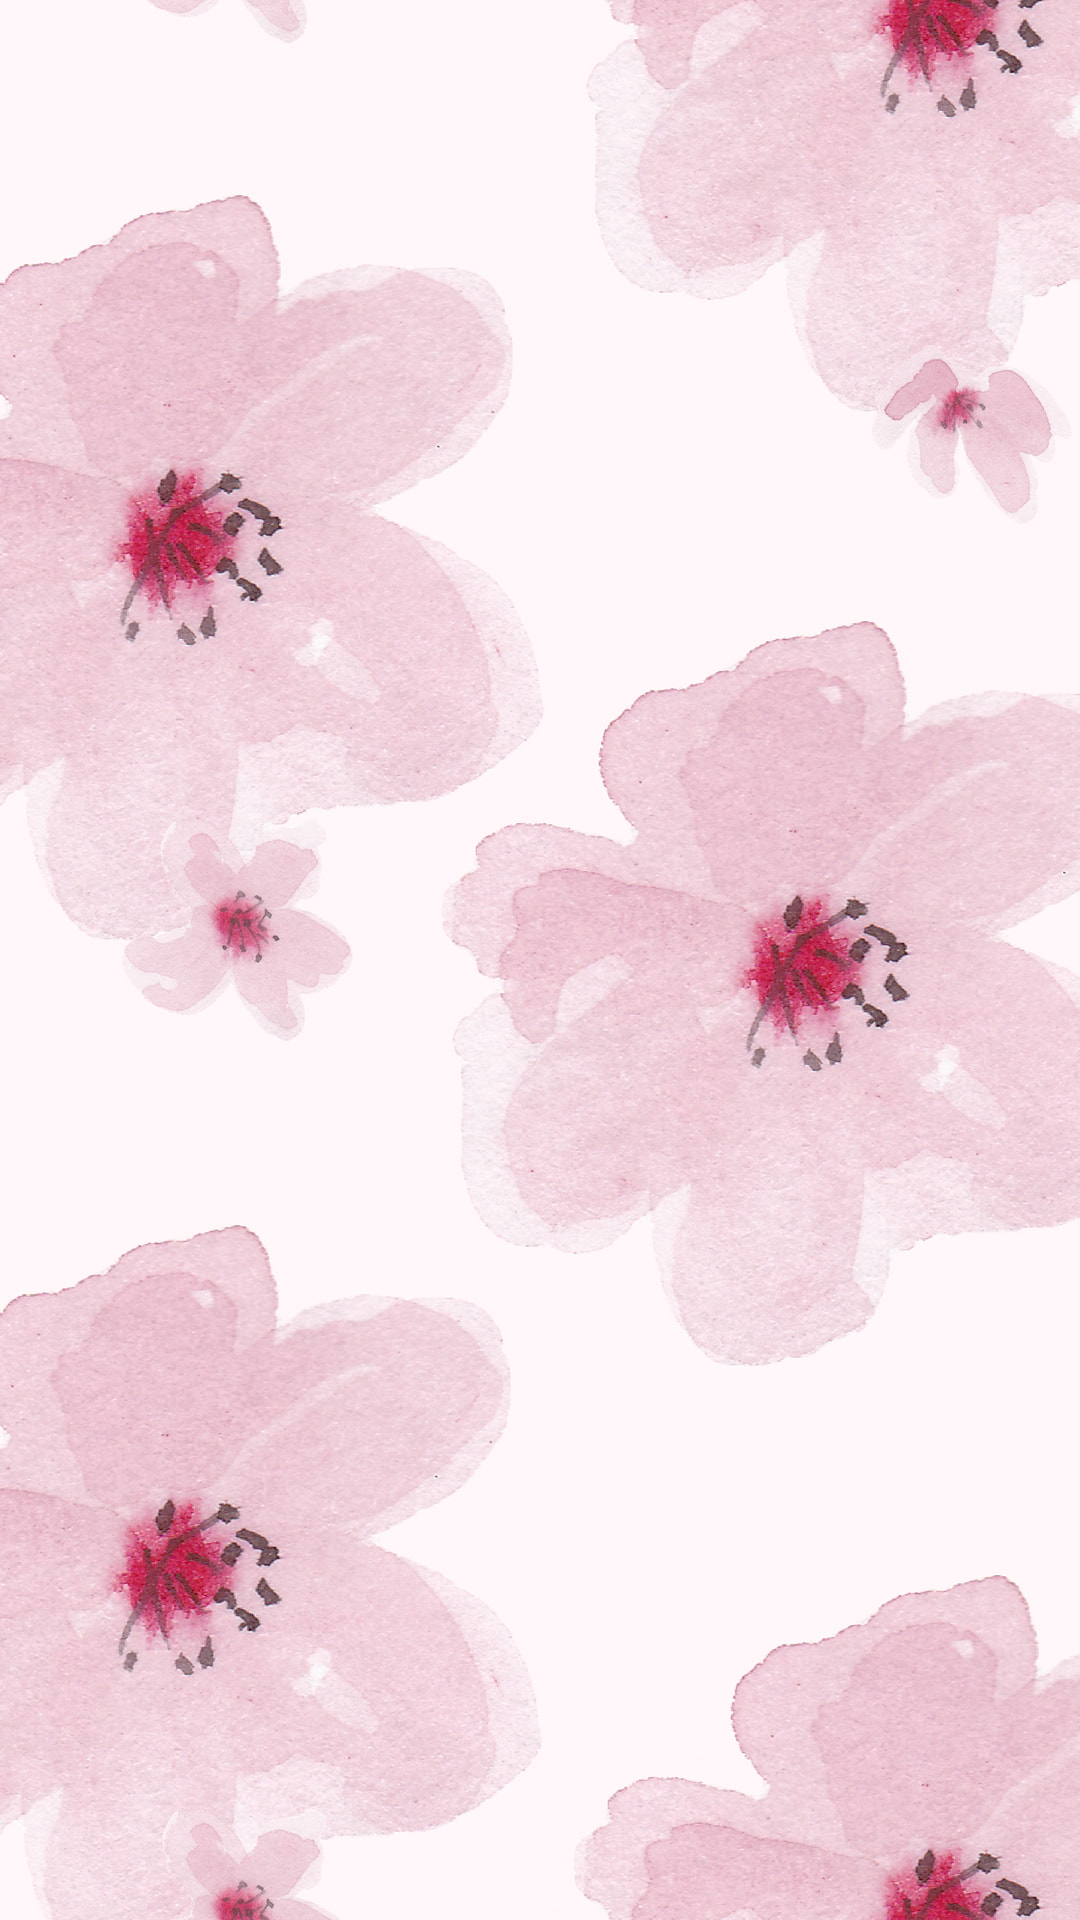 絵の具で描いた花のイラスト Iphone Wallpapers